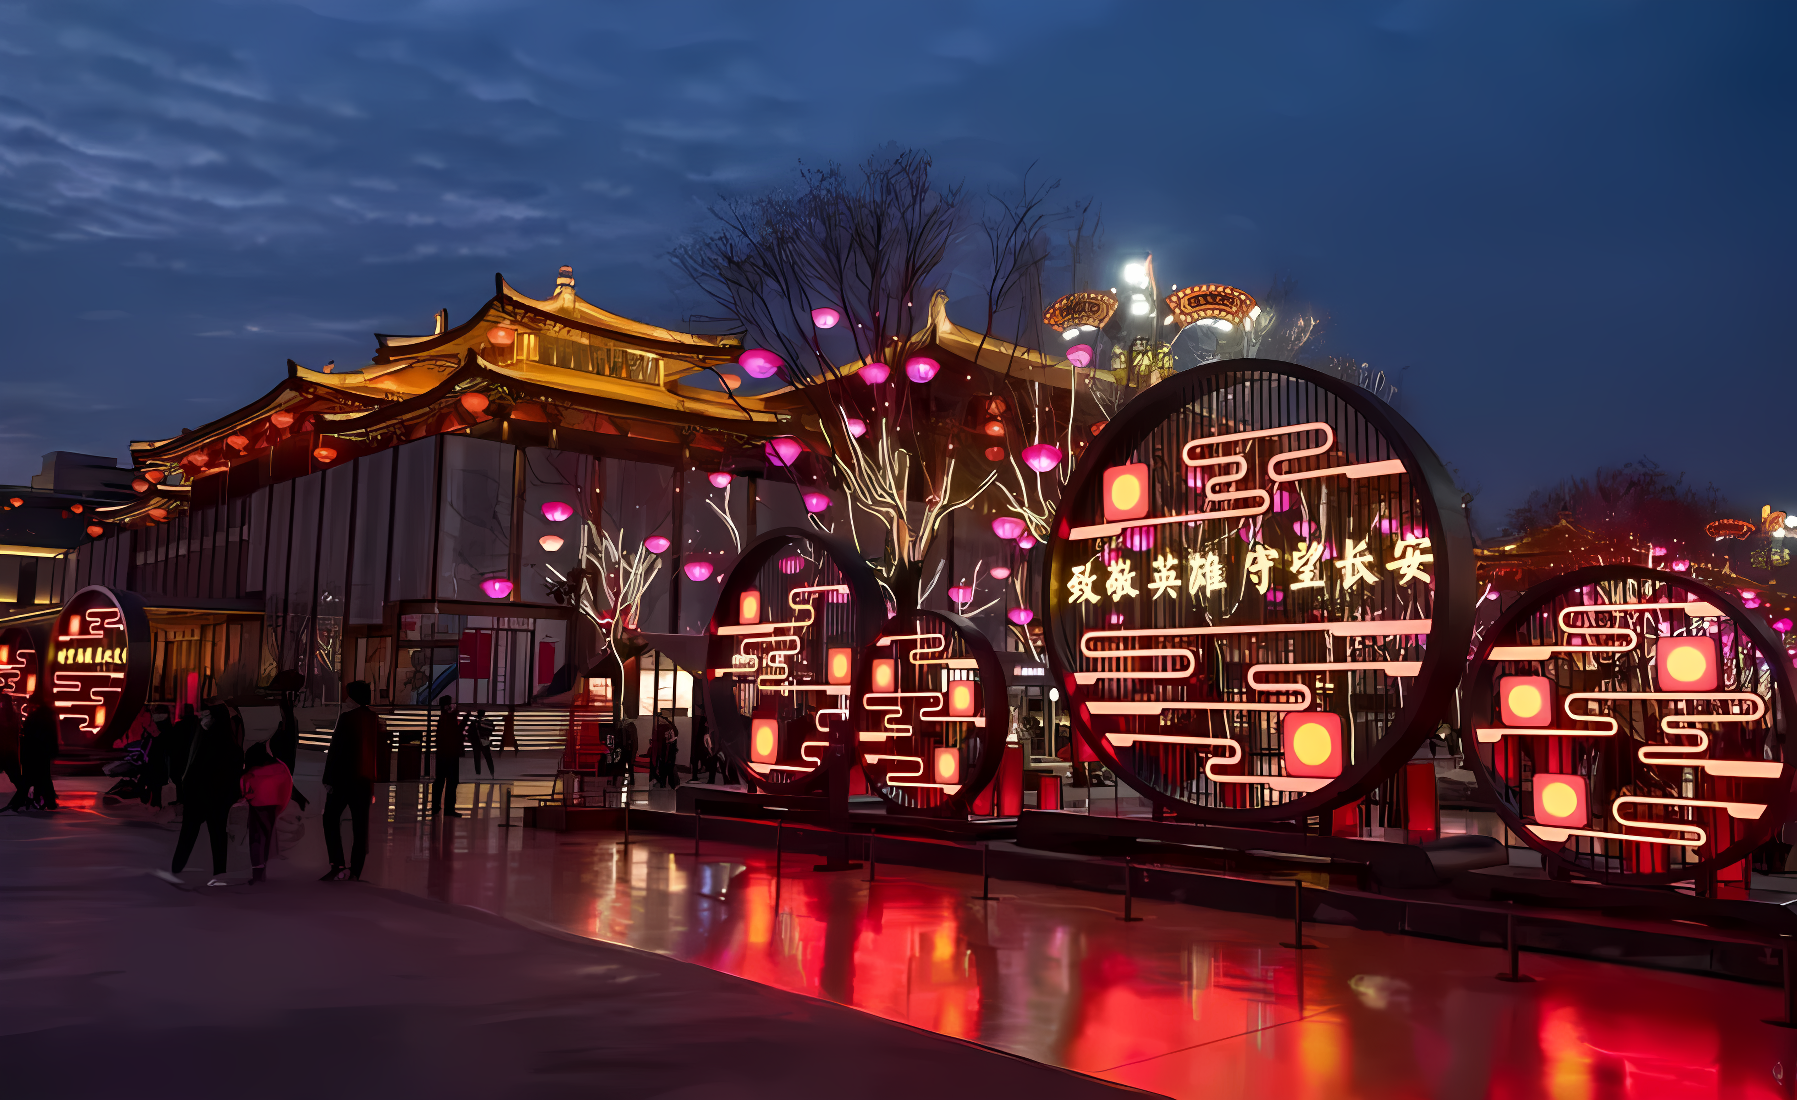 这是一张中国风的灯光装置艺术照片，展示了装饰华丽、色彩斑斓的灯笼和传统建筑，在傍晚时分显得格外醒目迷人。